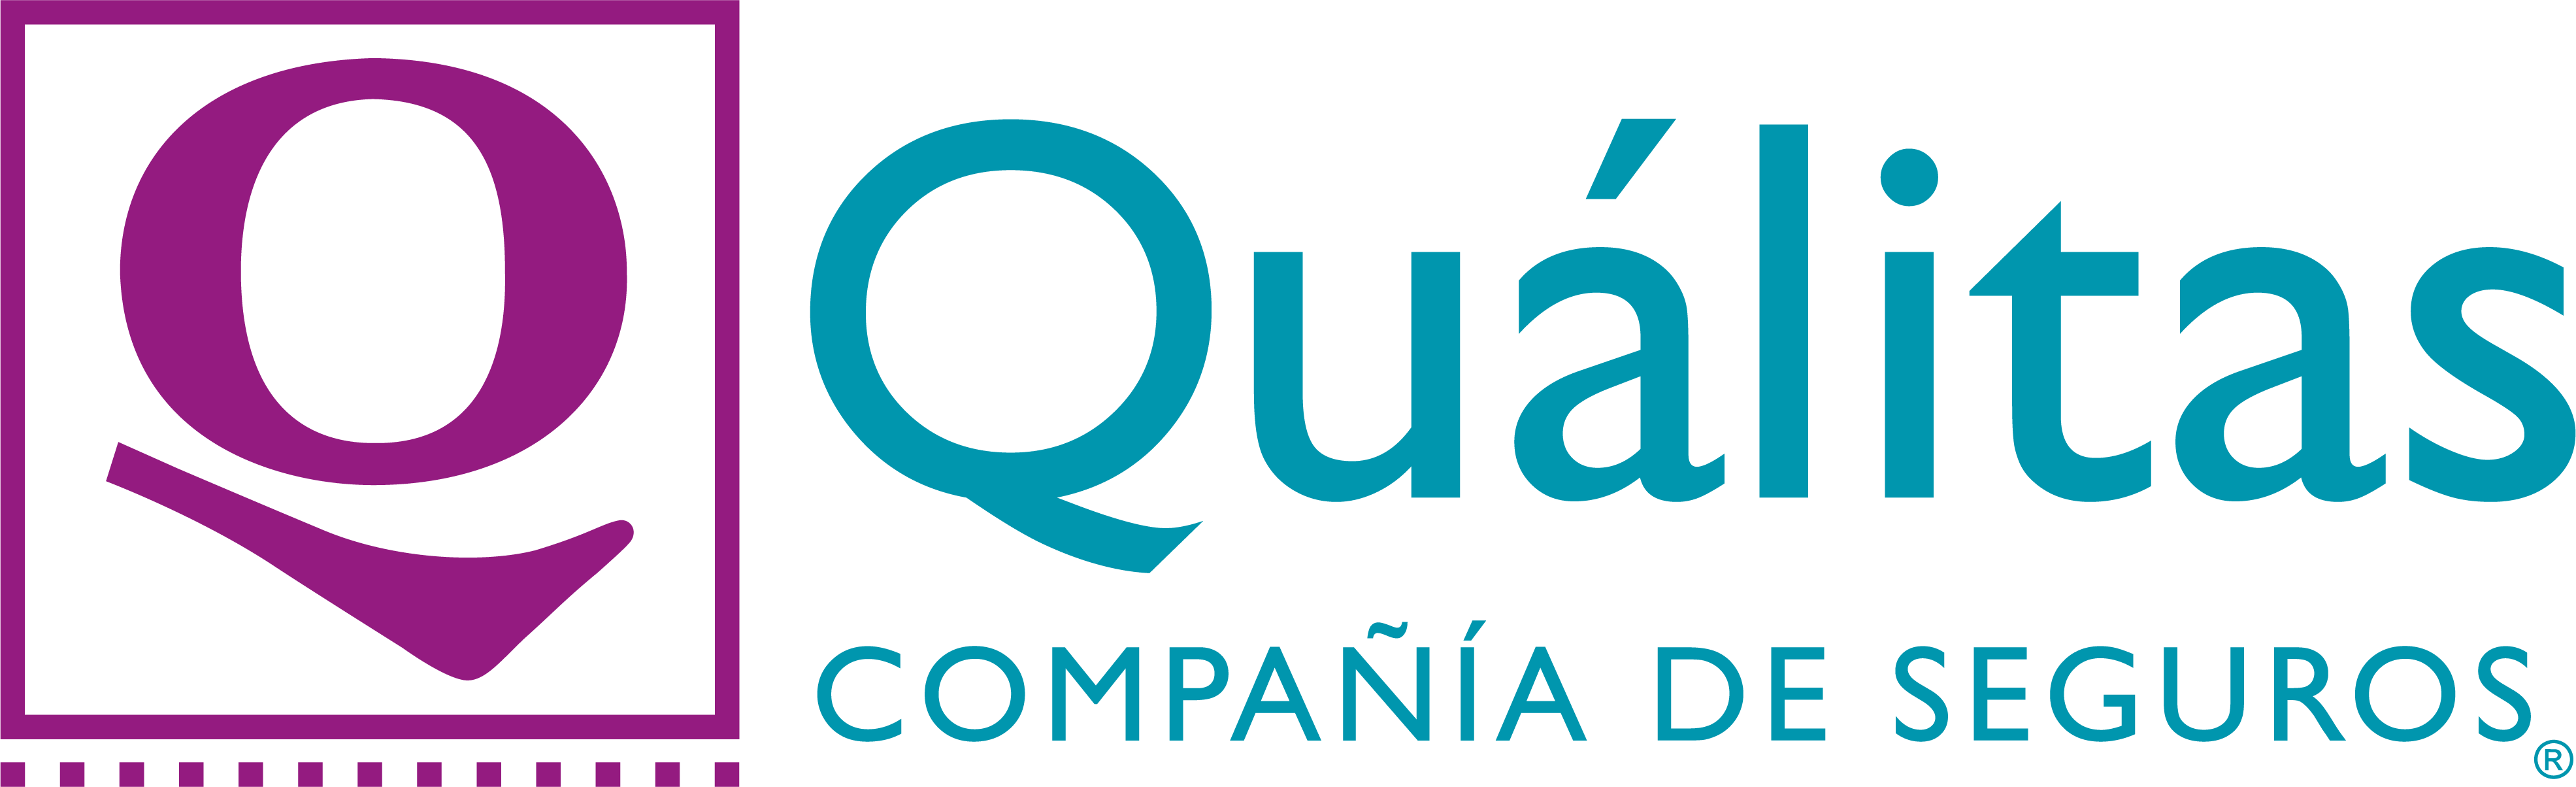 Qualitas logo